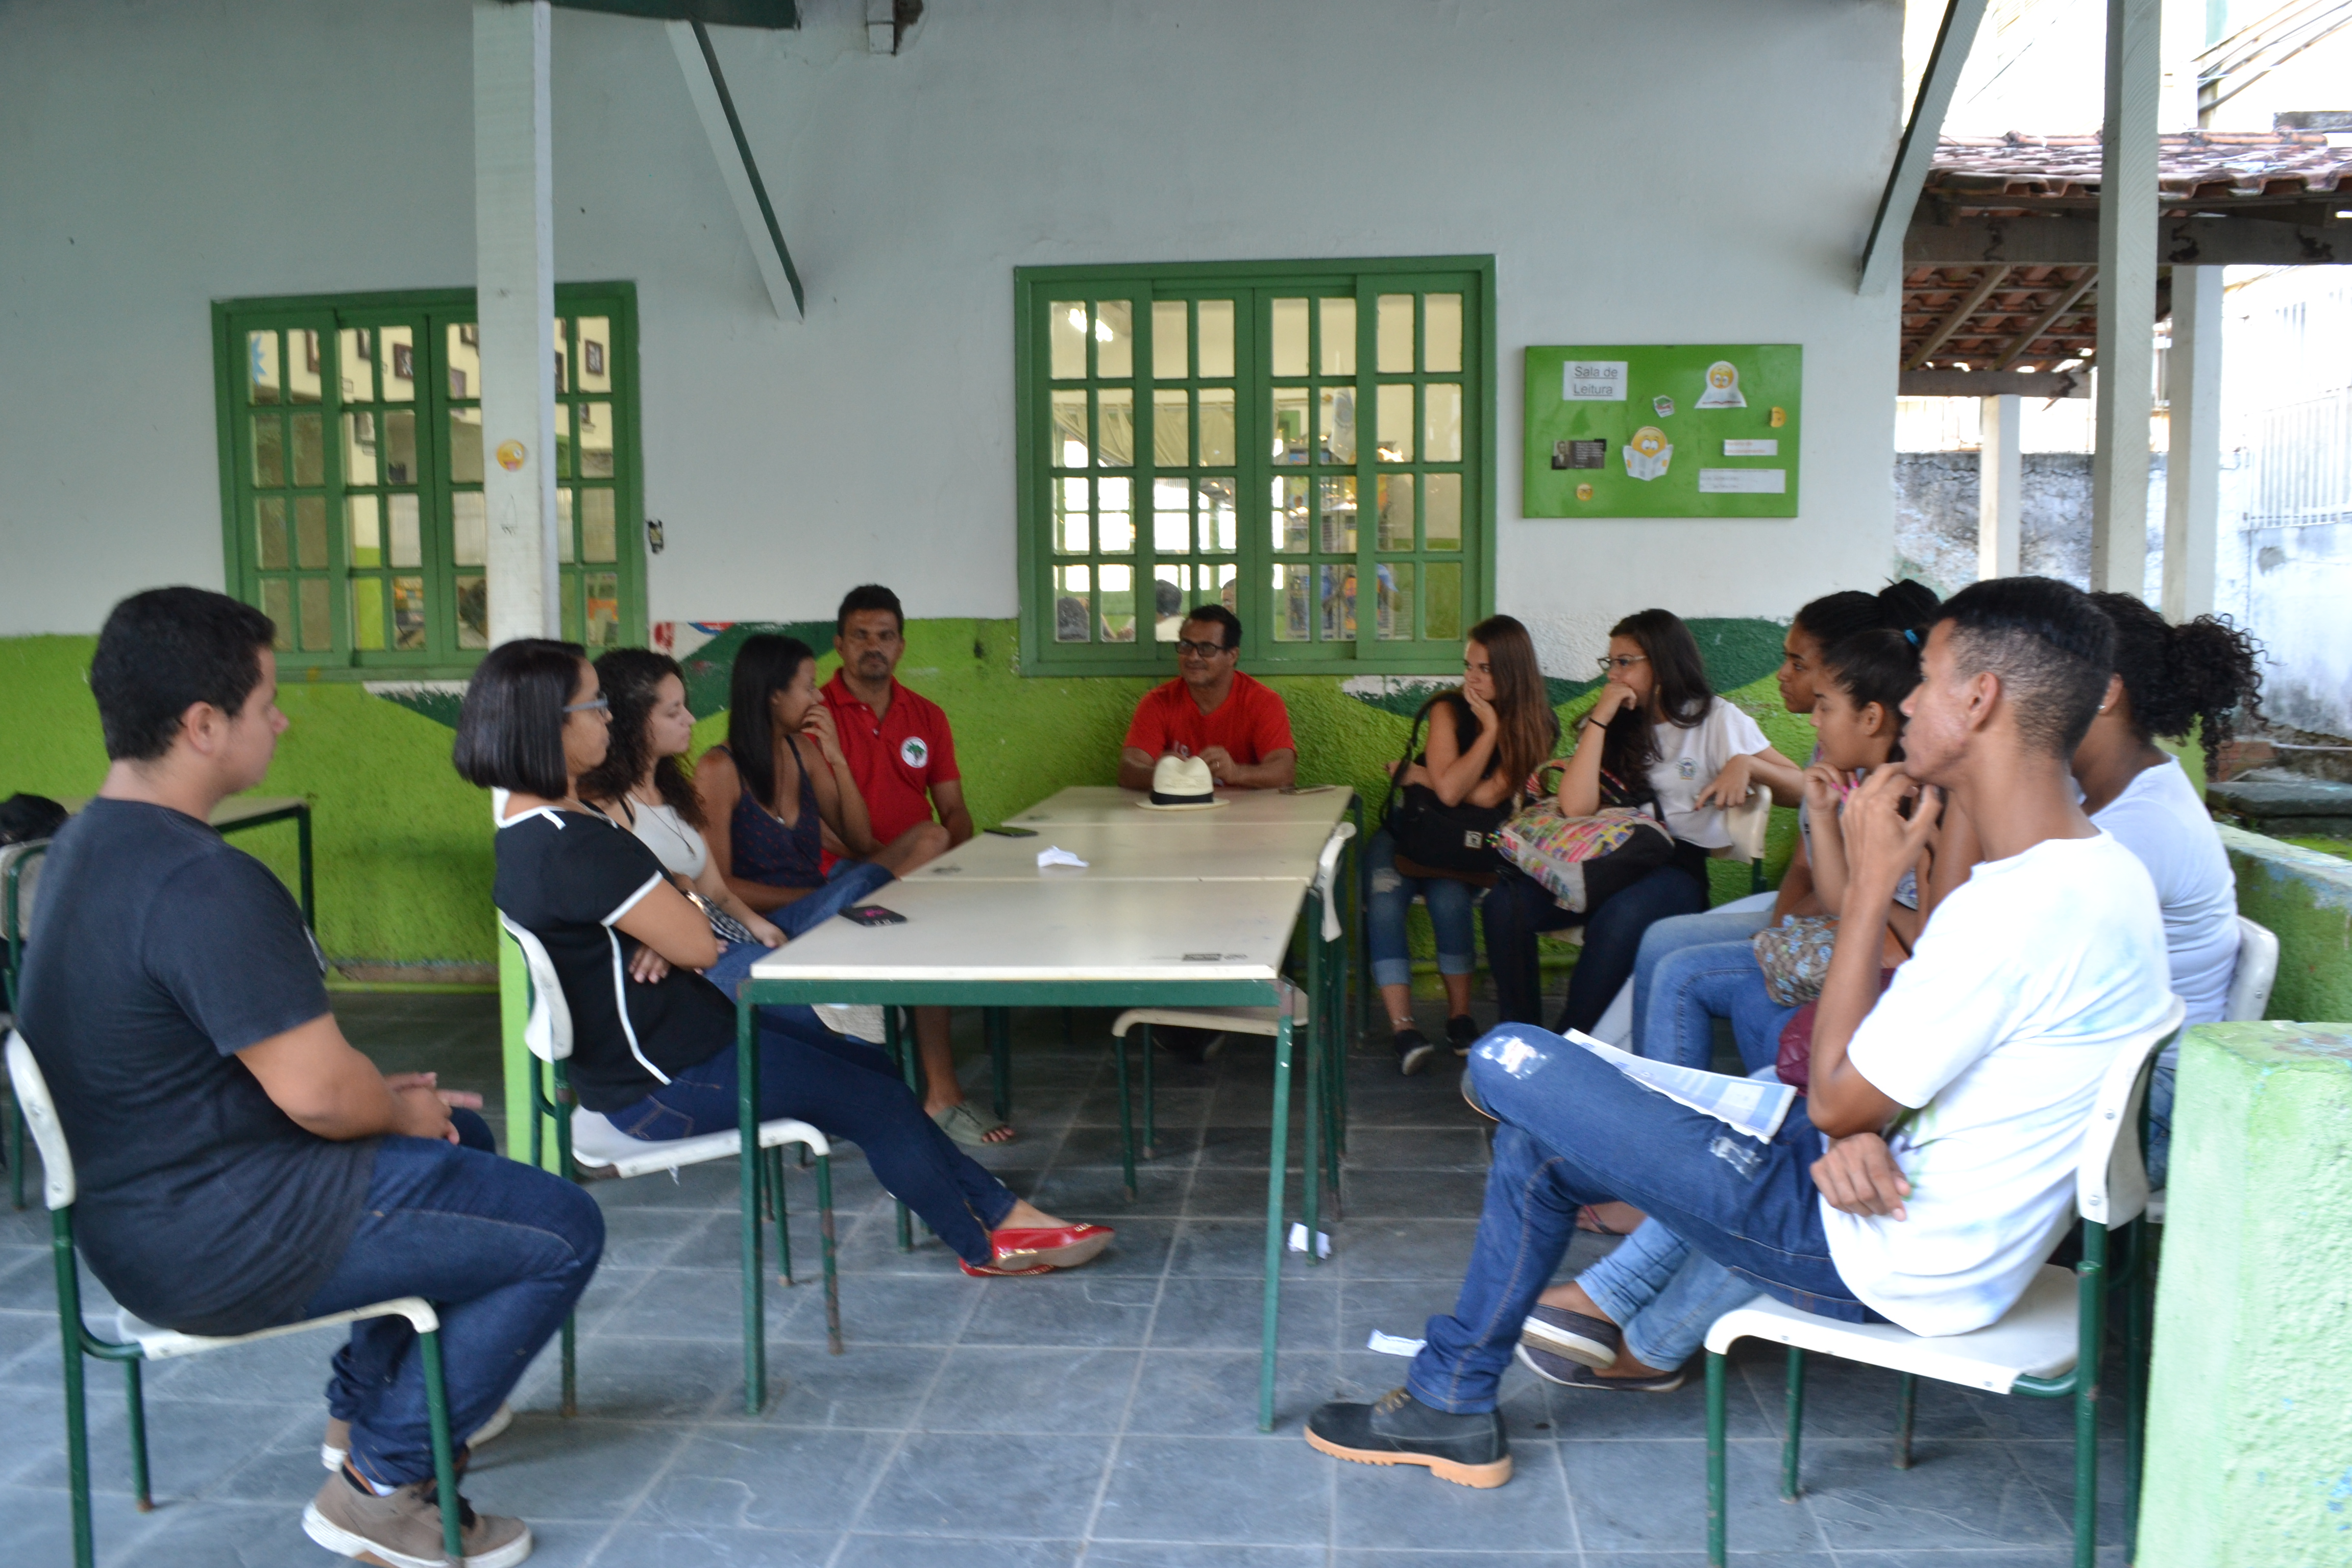 Alunos de escola estadual planejam reproduzir experiência municipal em horta comunitária de Maricá.